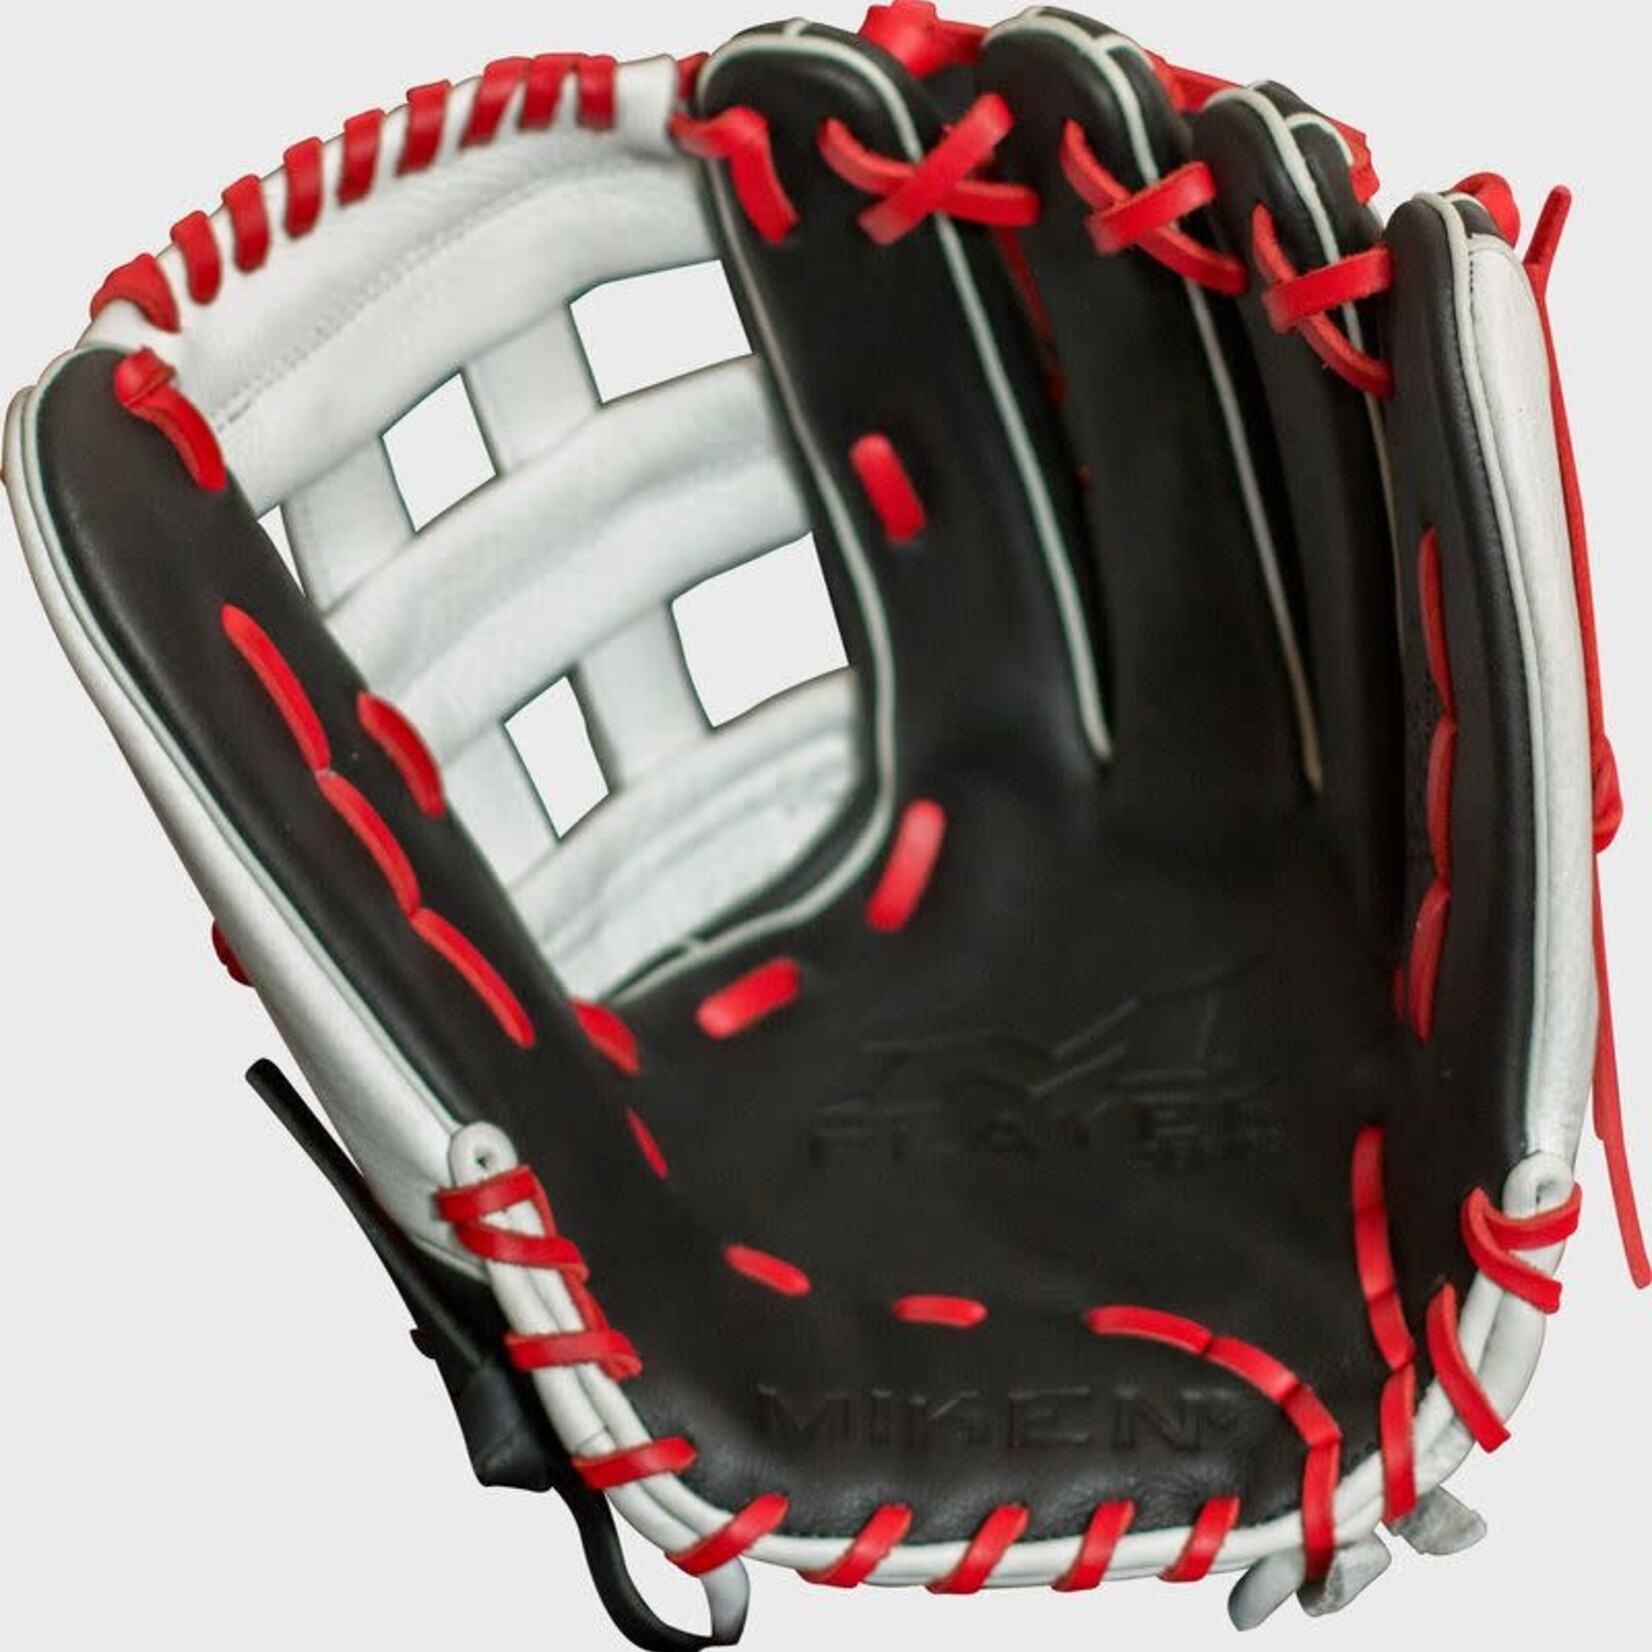 Miken Miken Baseball Glove, Players Series PS130, 13", Reg, Slowpitch